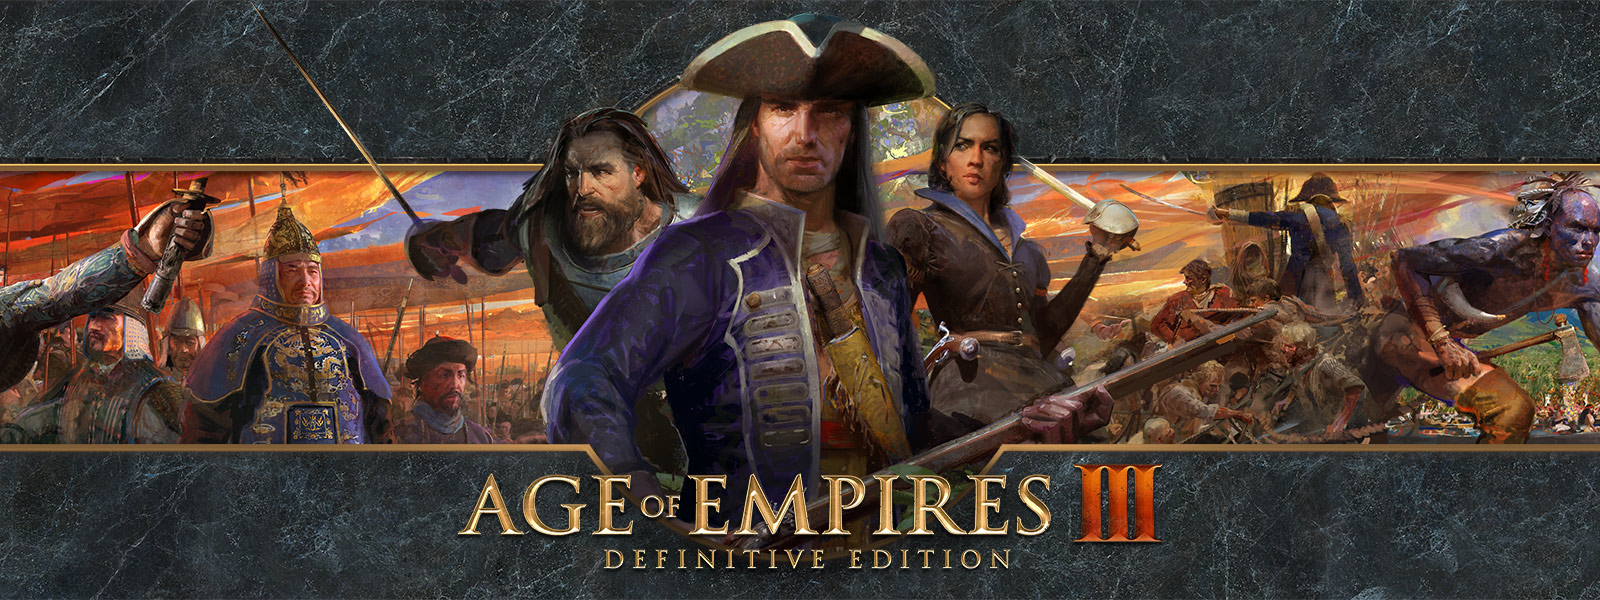 Age of Empires III: Definitive Edition 標誌在以戰爭領袖及其軍隊為特點的背景上